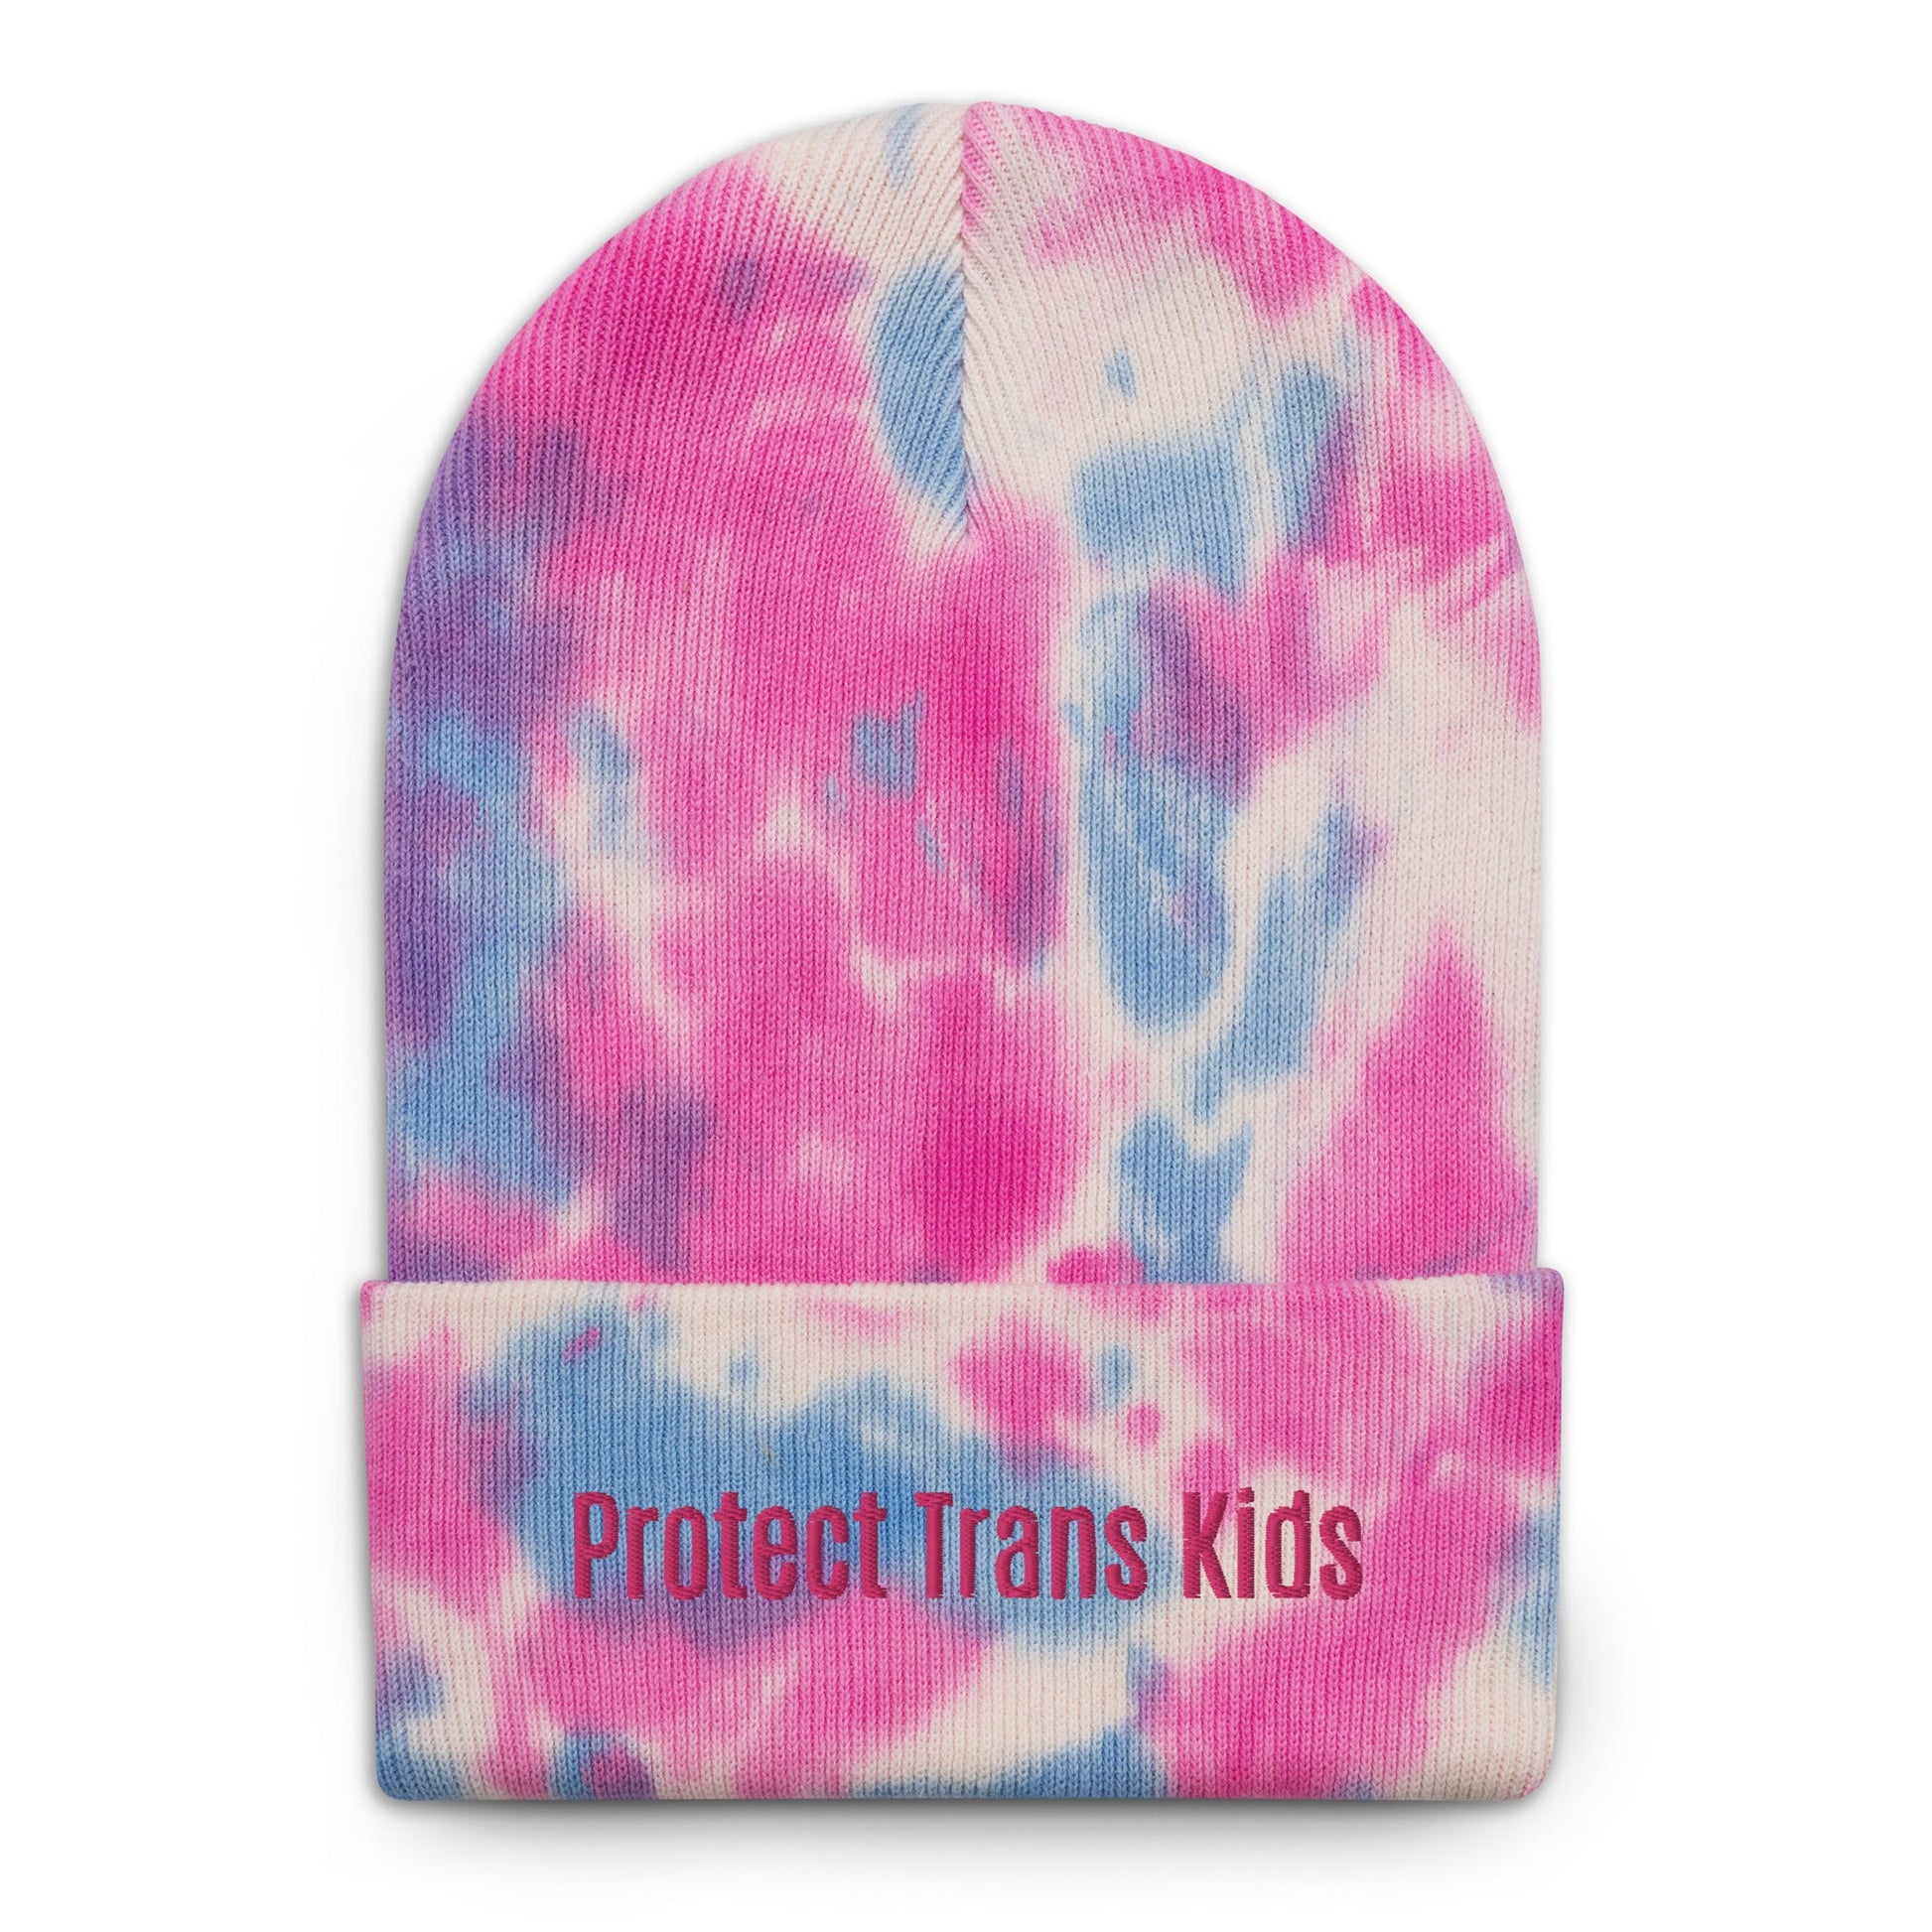 Protect Trans Kids Tie-Dye Beanie - dom+bomb